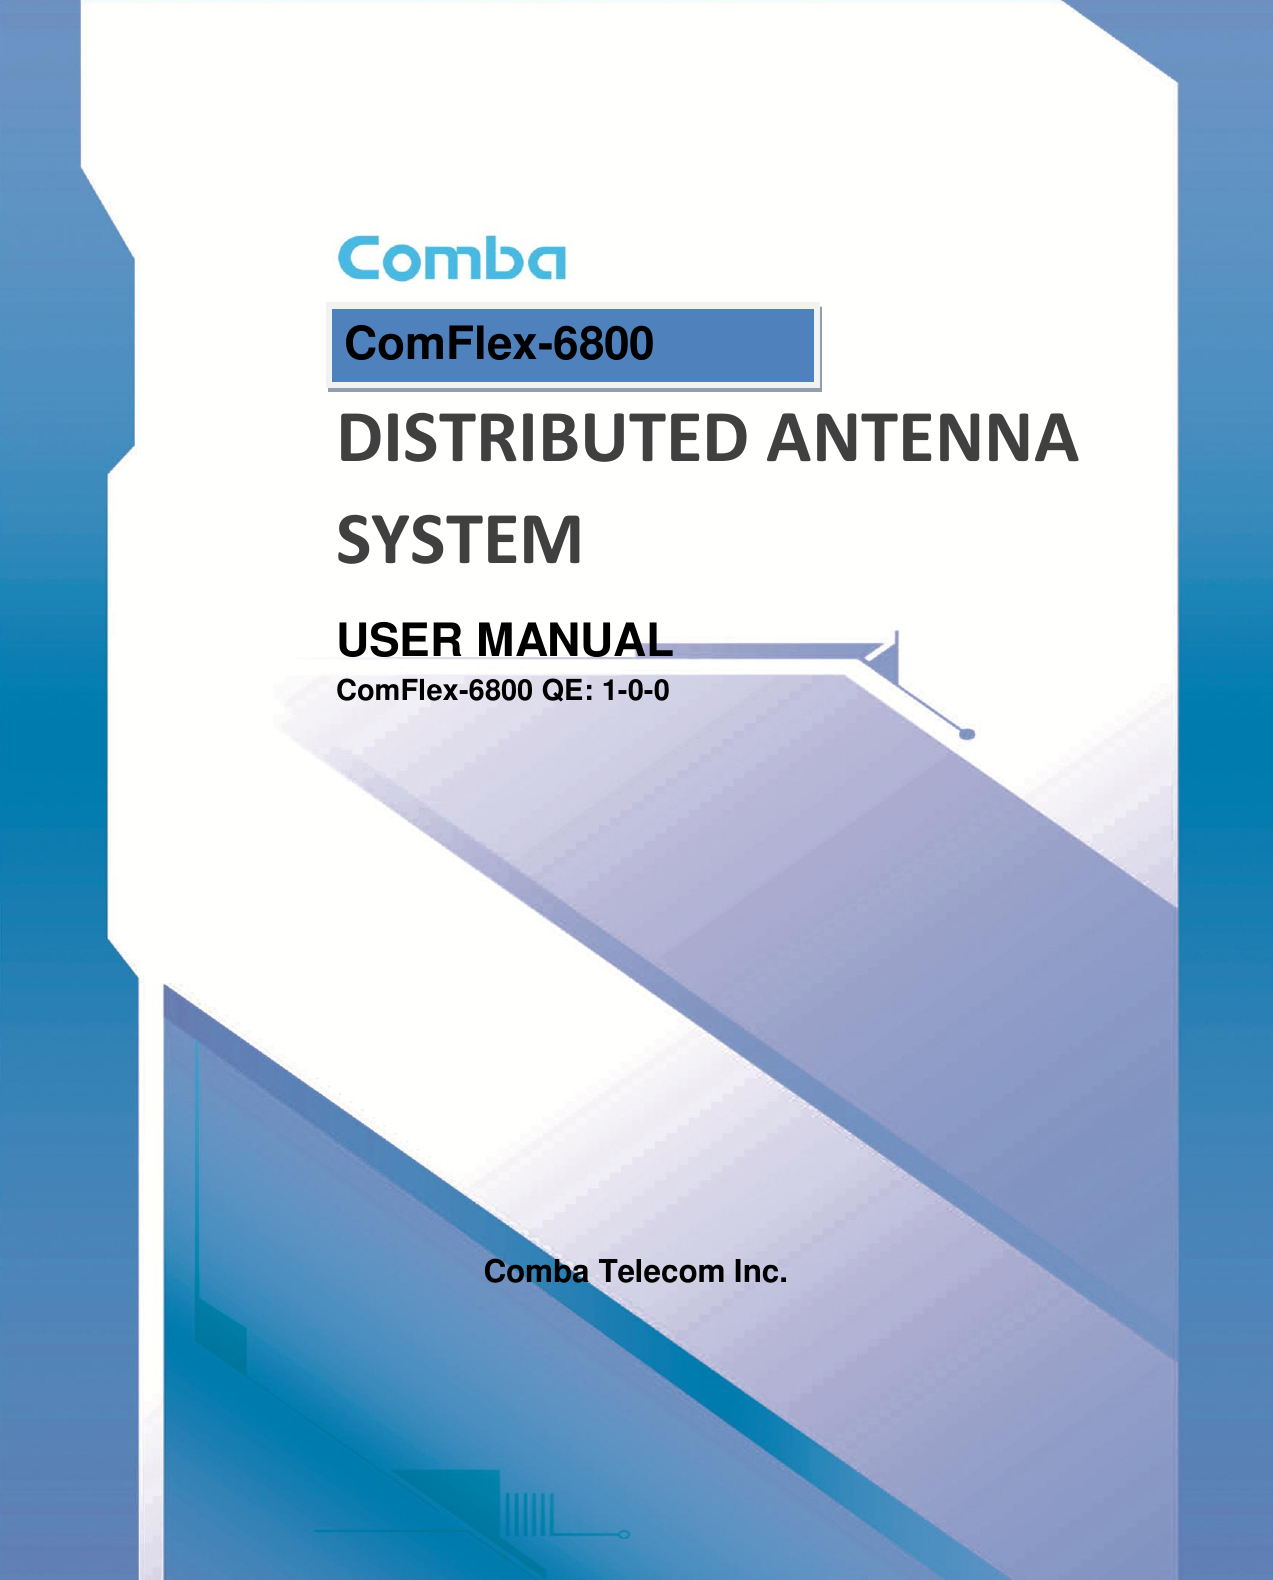       DISTRIBUTED ANTENNA SYSTEM USER MANUAL ComFlex-6800 QE: 1-0-0            Comba Telecom Inc. ComFlex-6800  